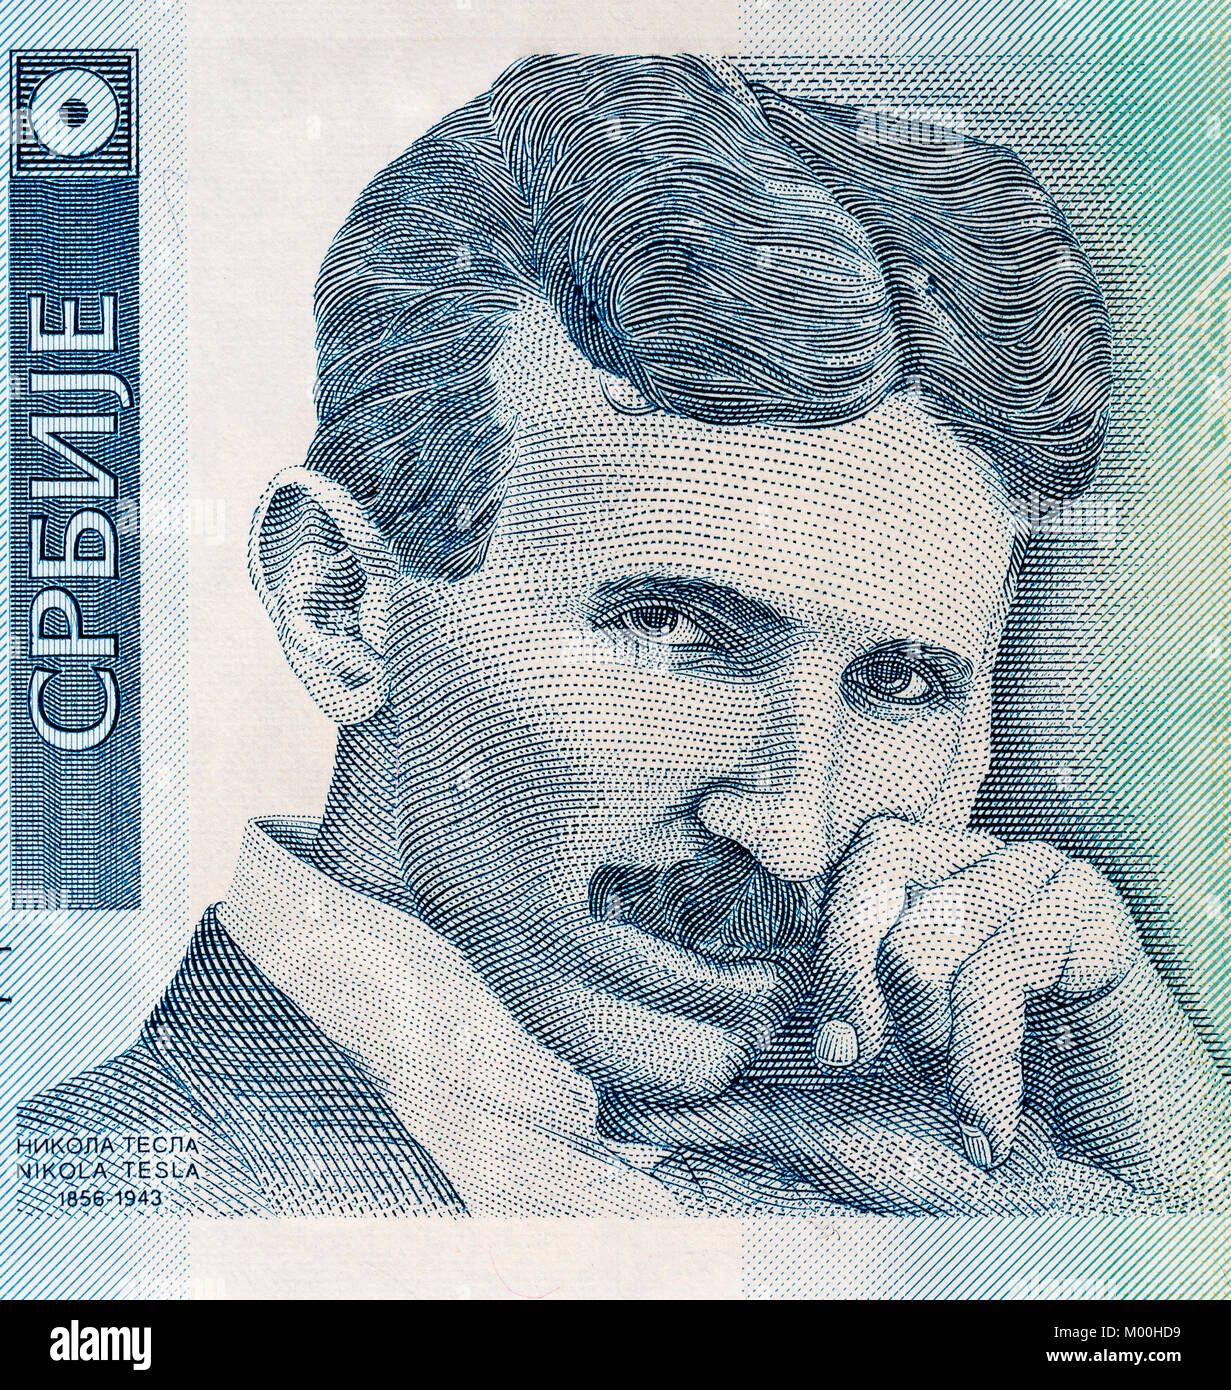 Ritratto di scienziato Nikola Tesla Foto Stock